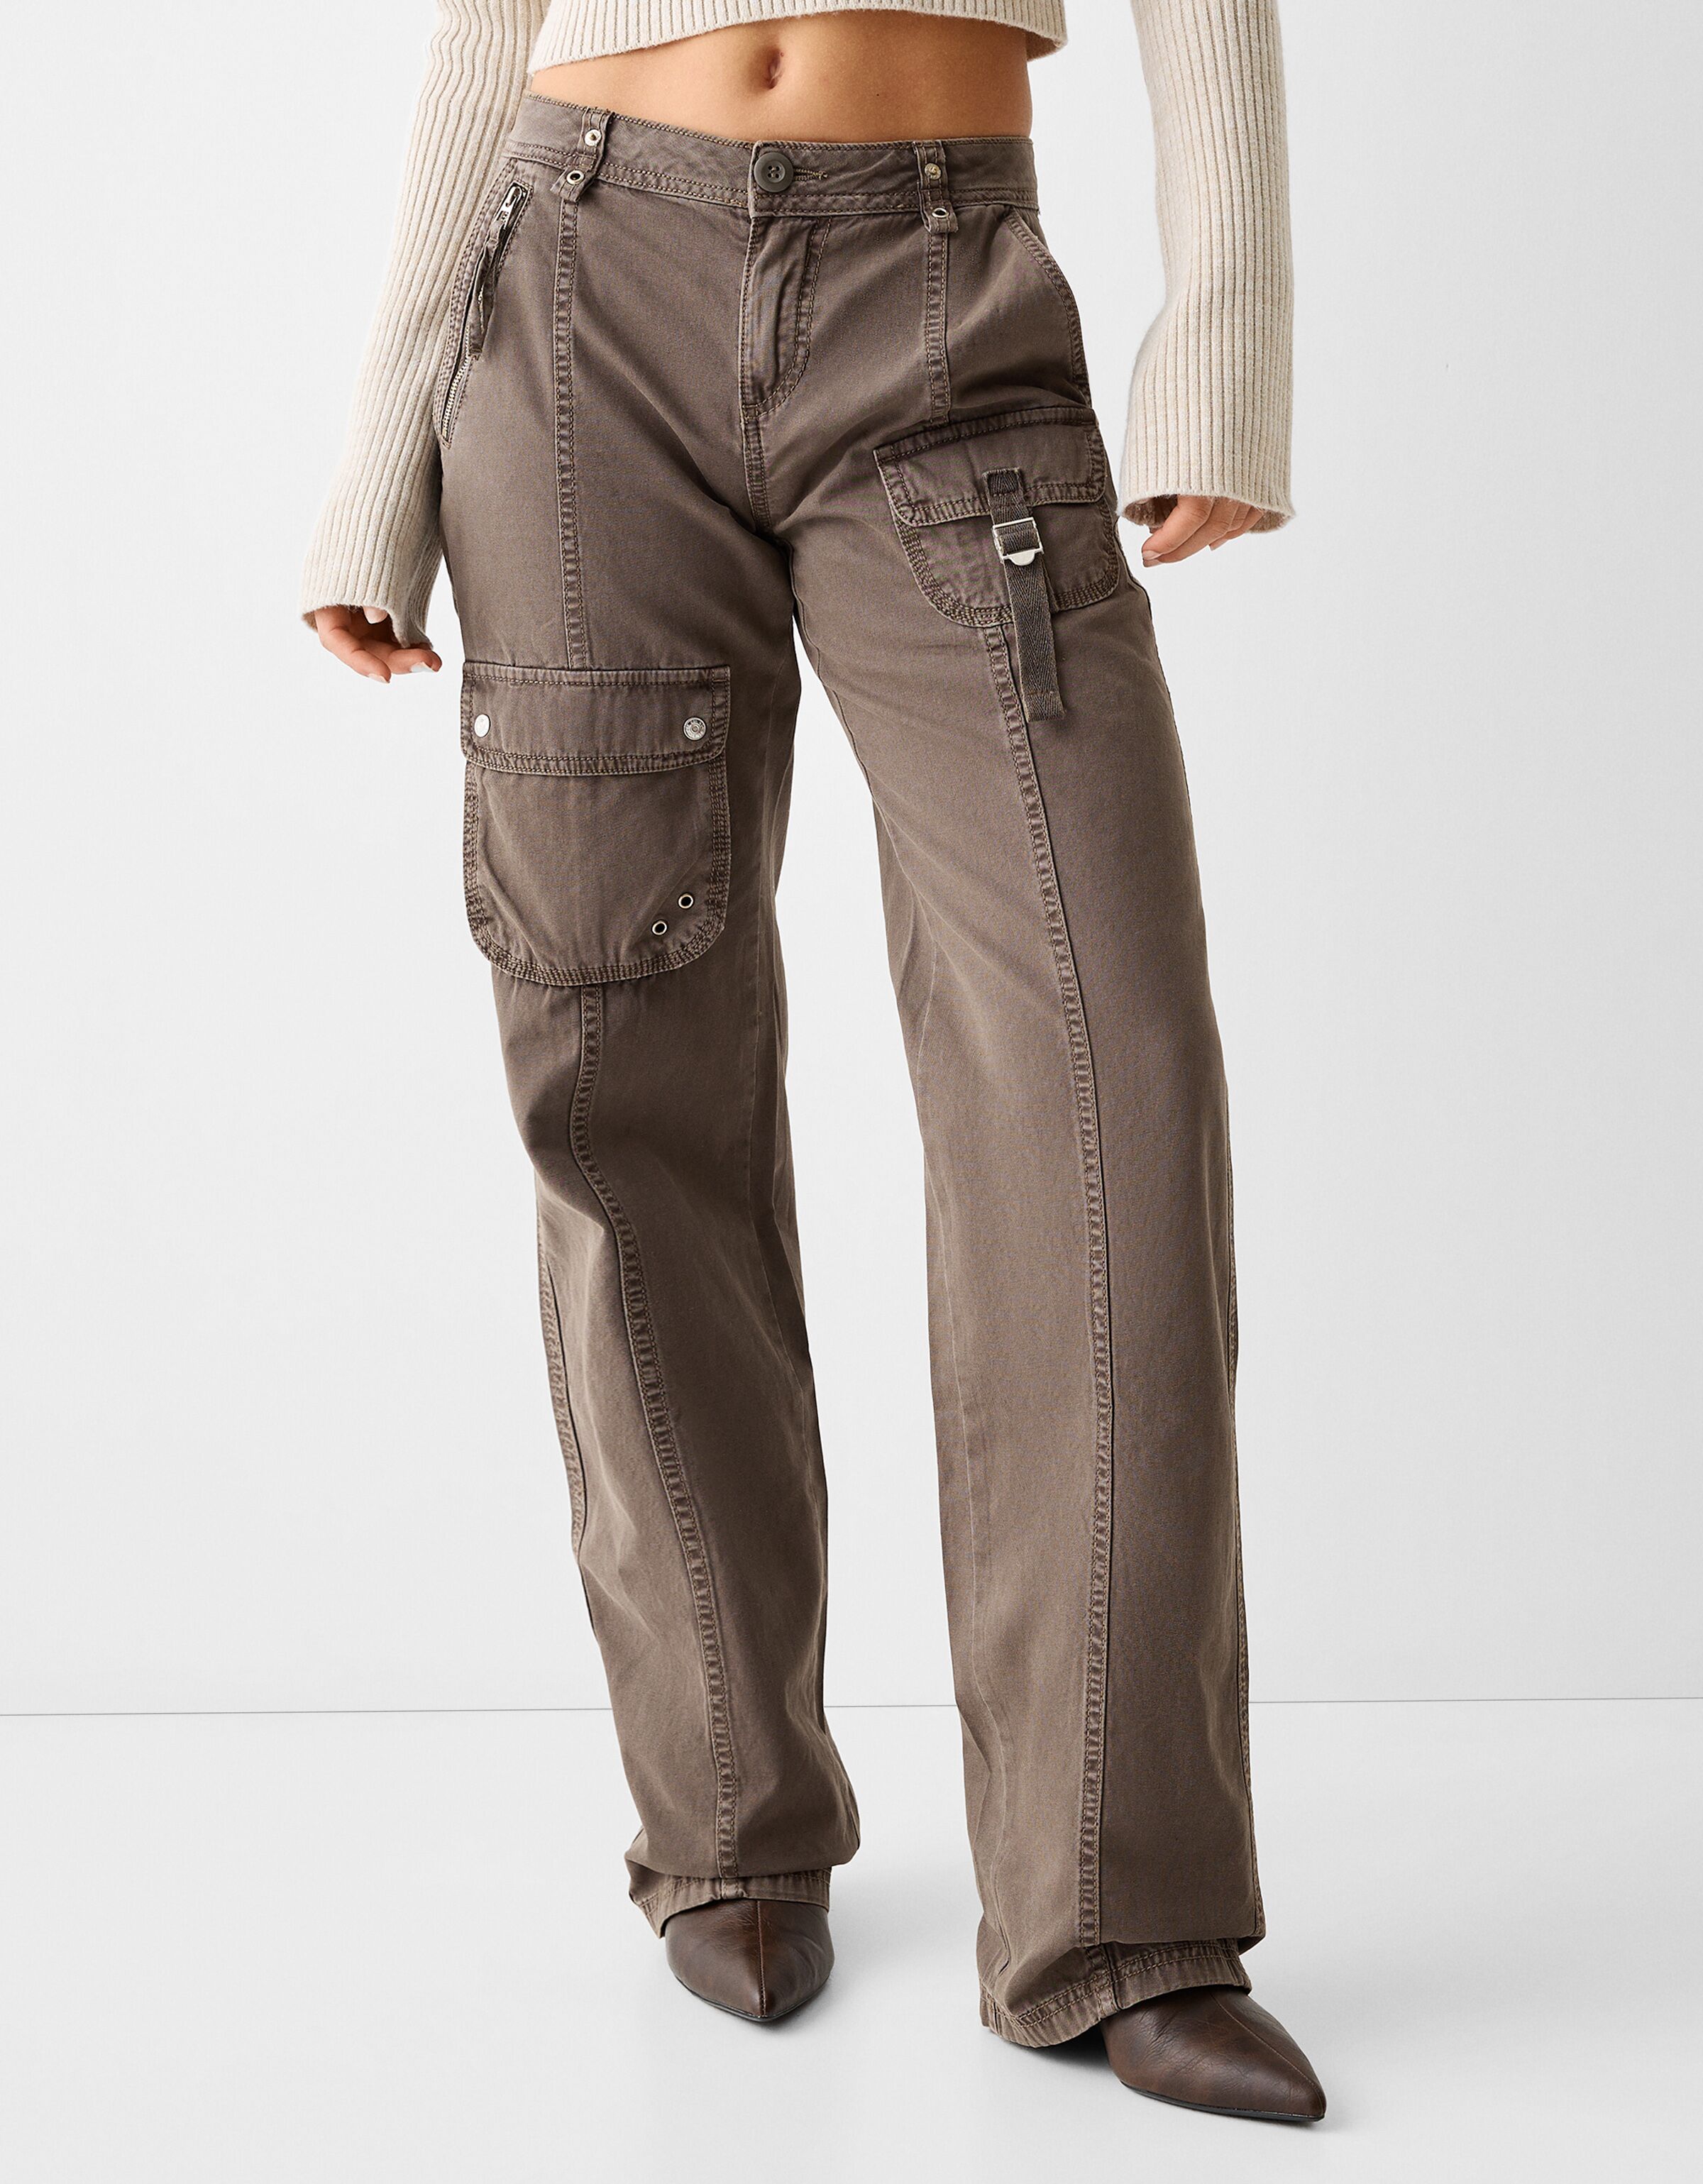 light brown cargo pants 100 cotton canvas paisley print – KROST